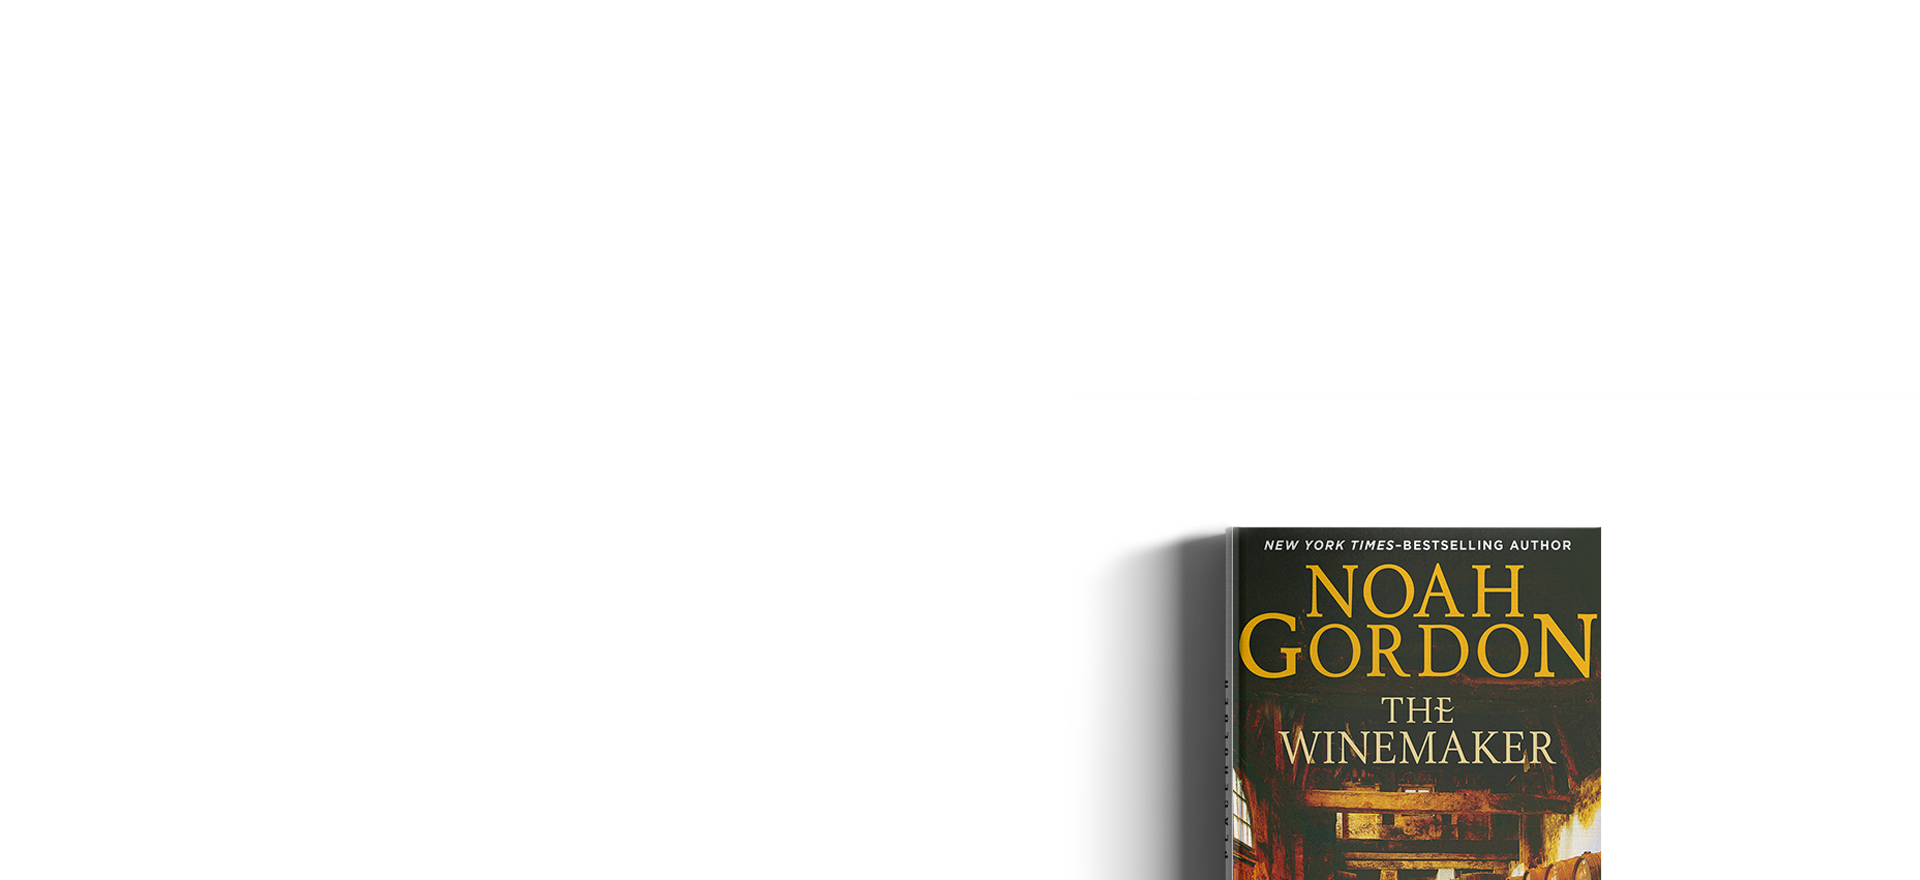 the physician noah gordon review